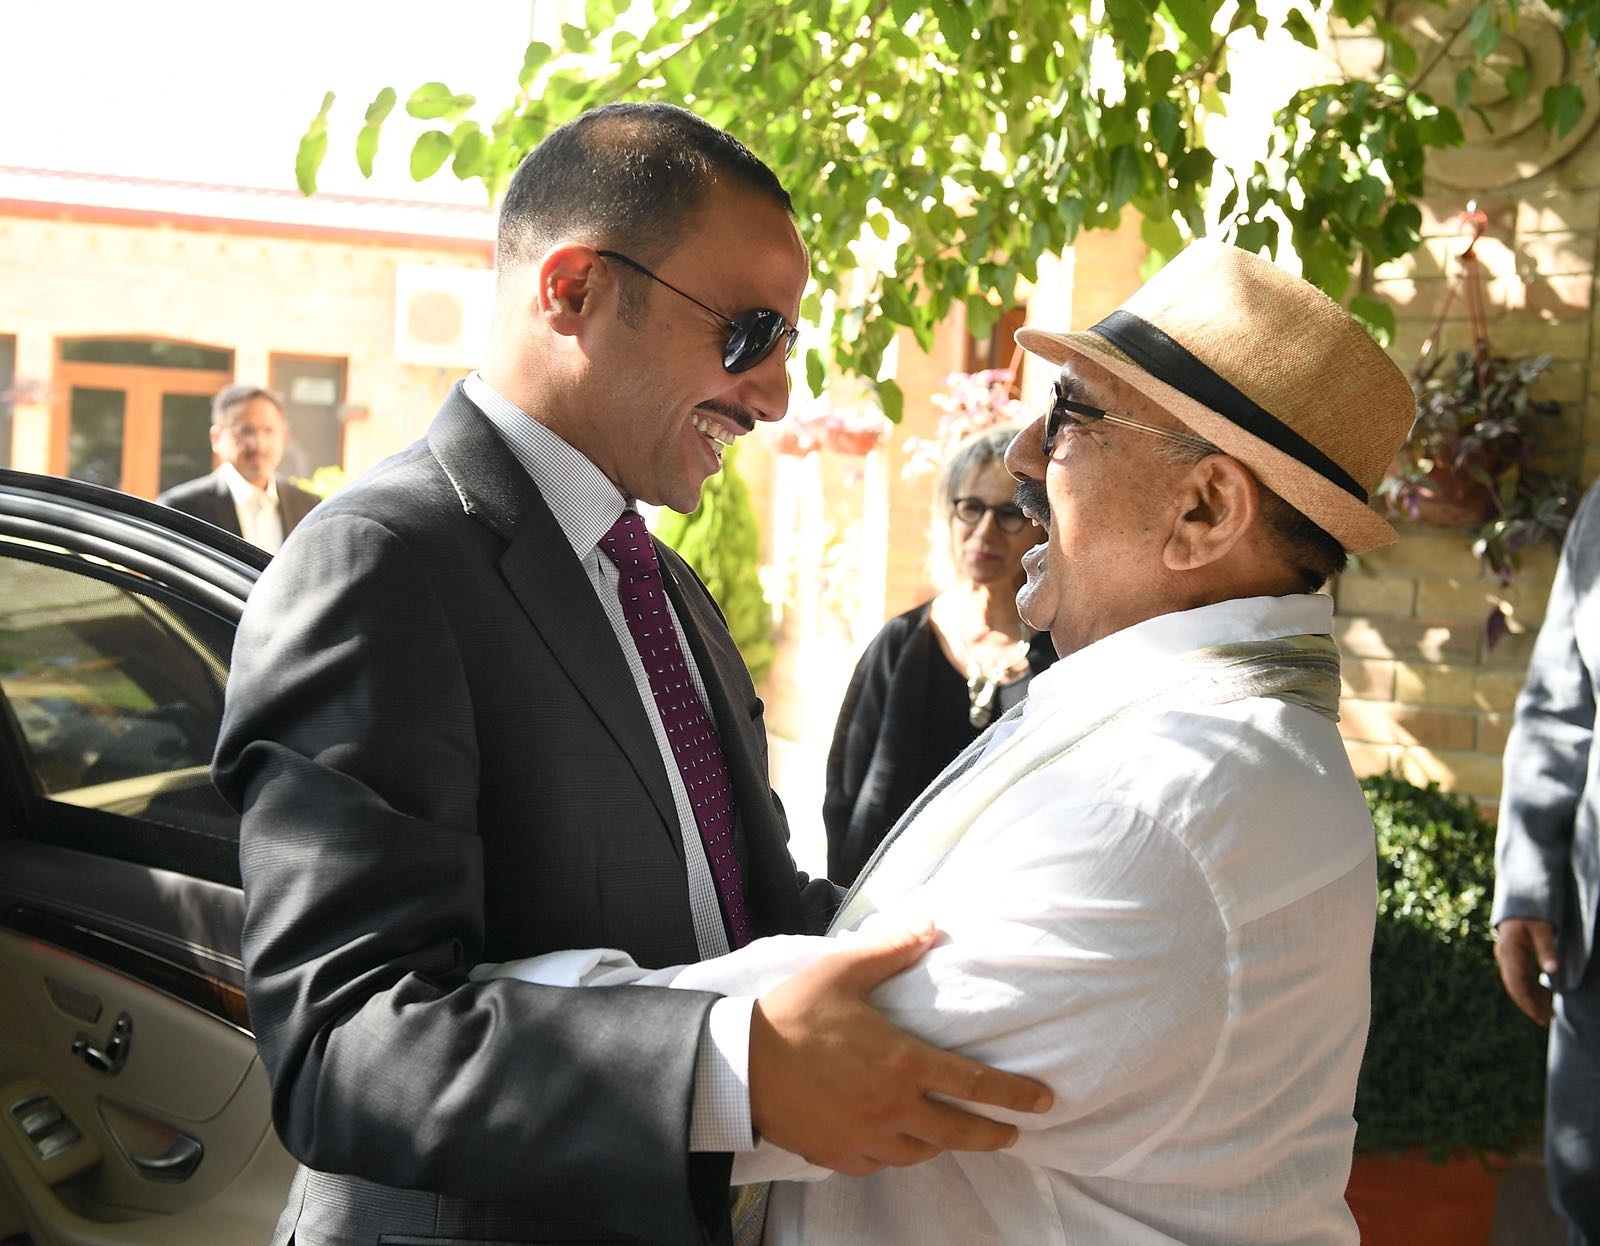 Parliament Speaker Marzouq Al-Ghanim visits First Deputy Prime Minister and Defense Minister Sheikh Nasser Sabah Al-Ahmad Al-Sabah